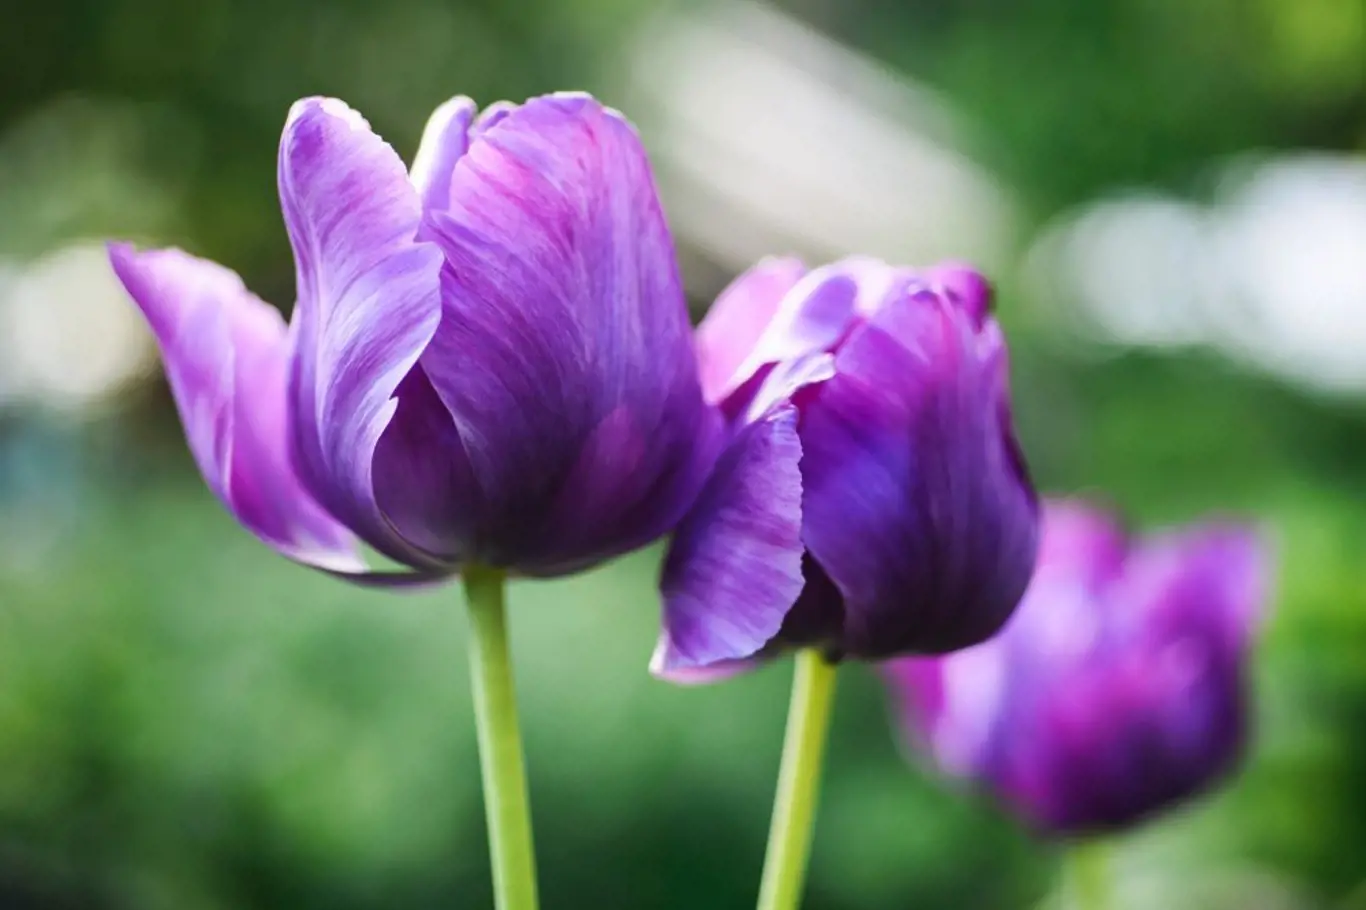 Papouščí tulipány zdobí nevšední tvary i barvy květů